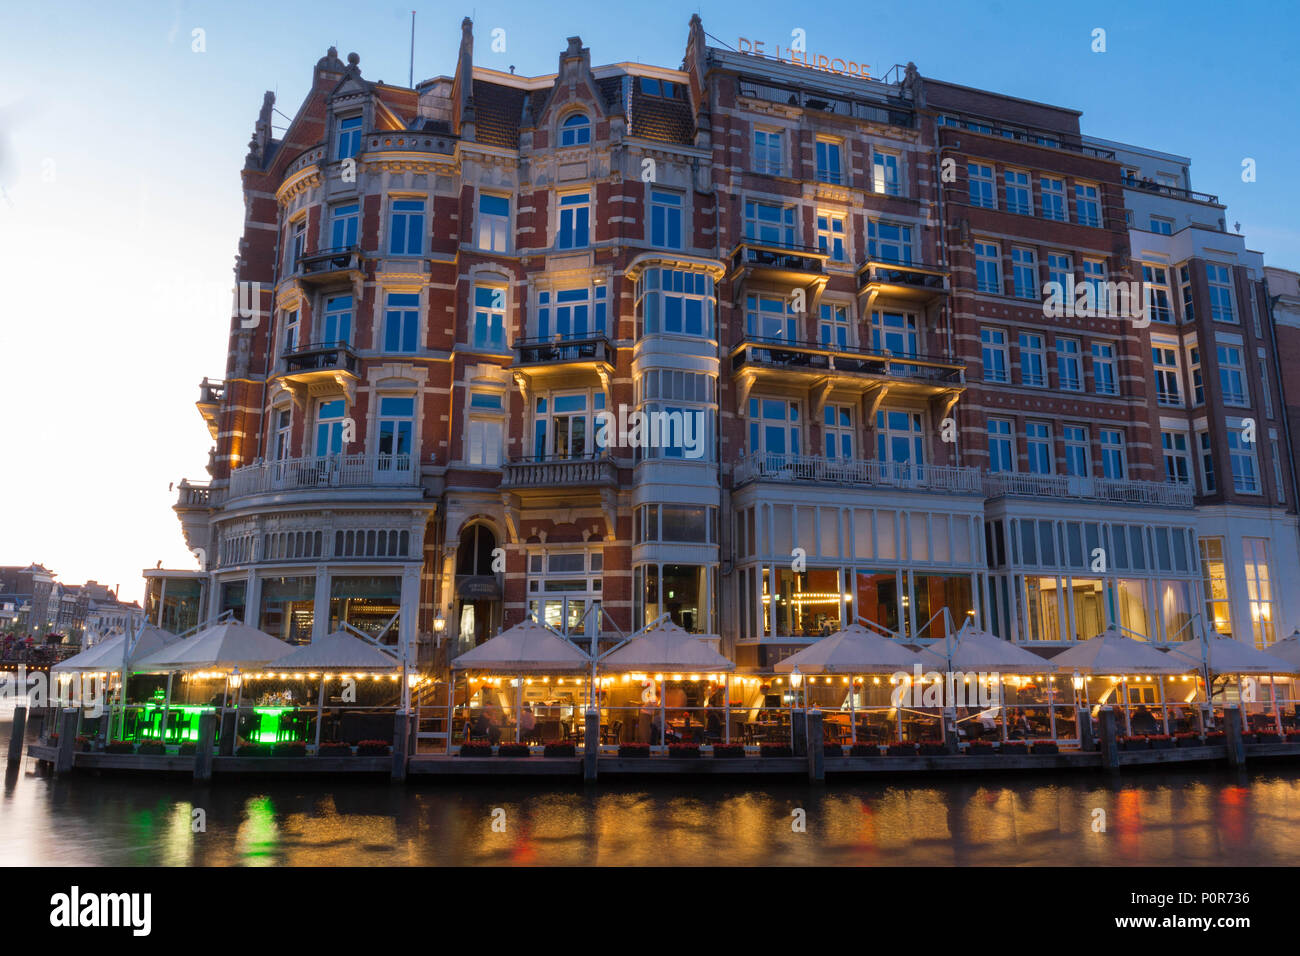 Hotel de l'Europe è un hotel a cinque stelle situato sul fiume Amstel. L'hotel del XIX secolo divenne un monumento ufficiale nel 2001. Foto Stock